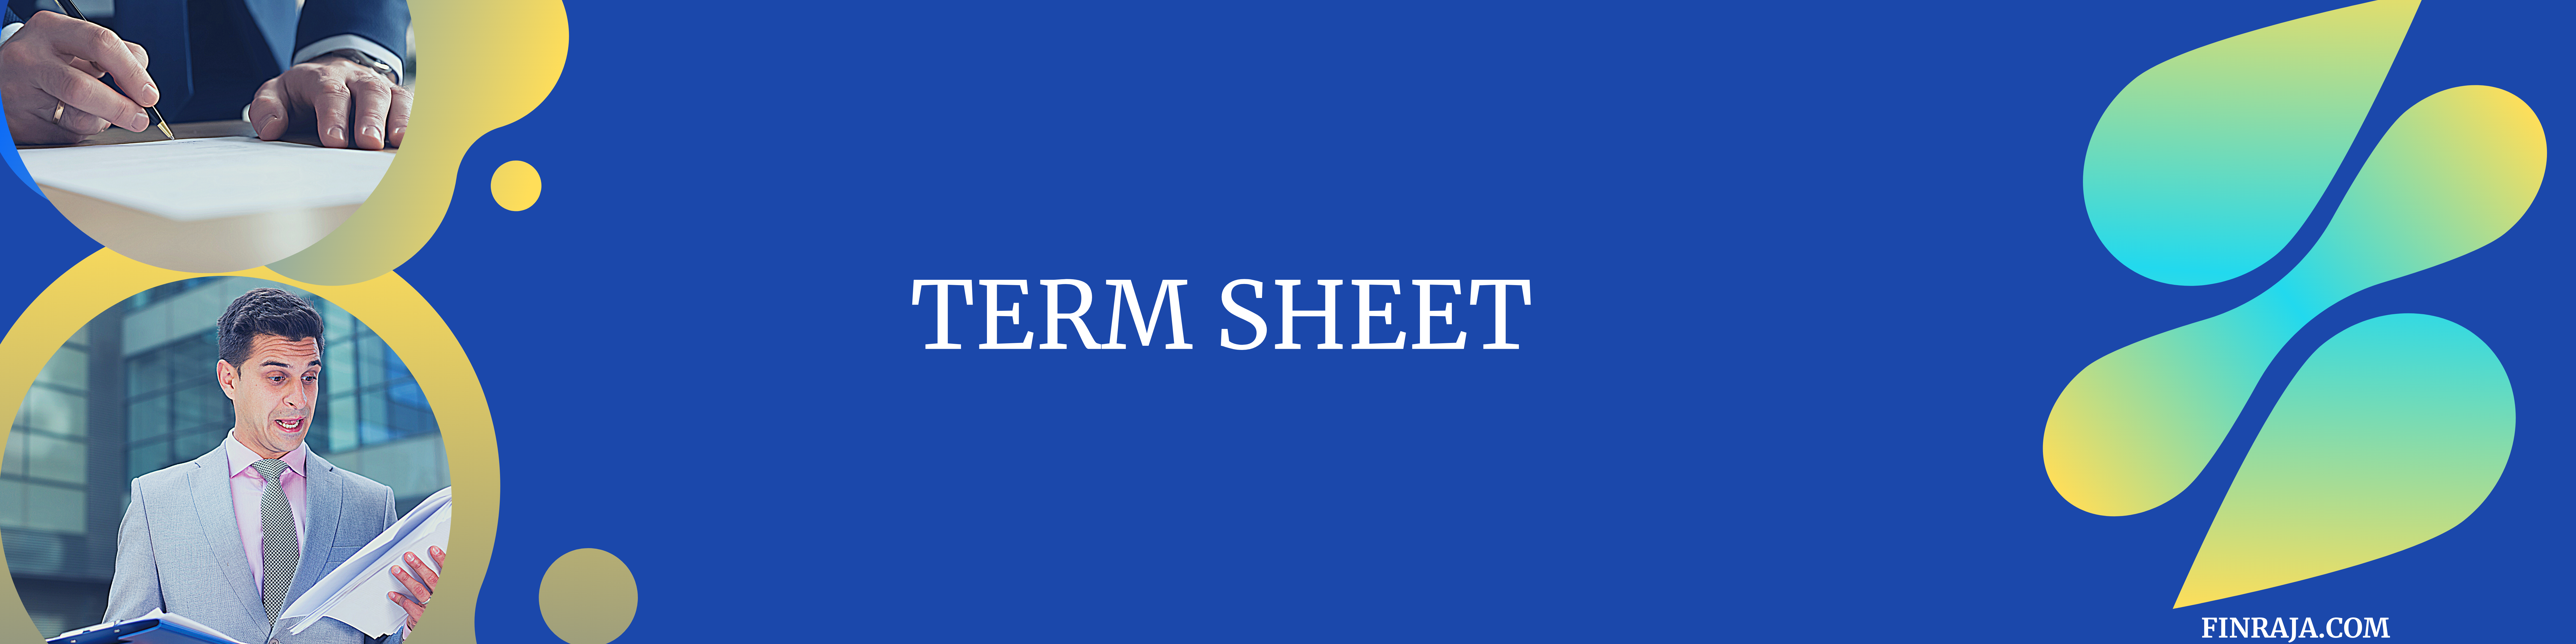 term sheet